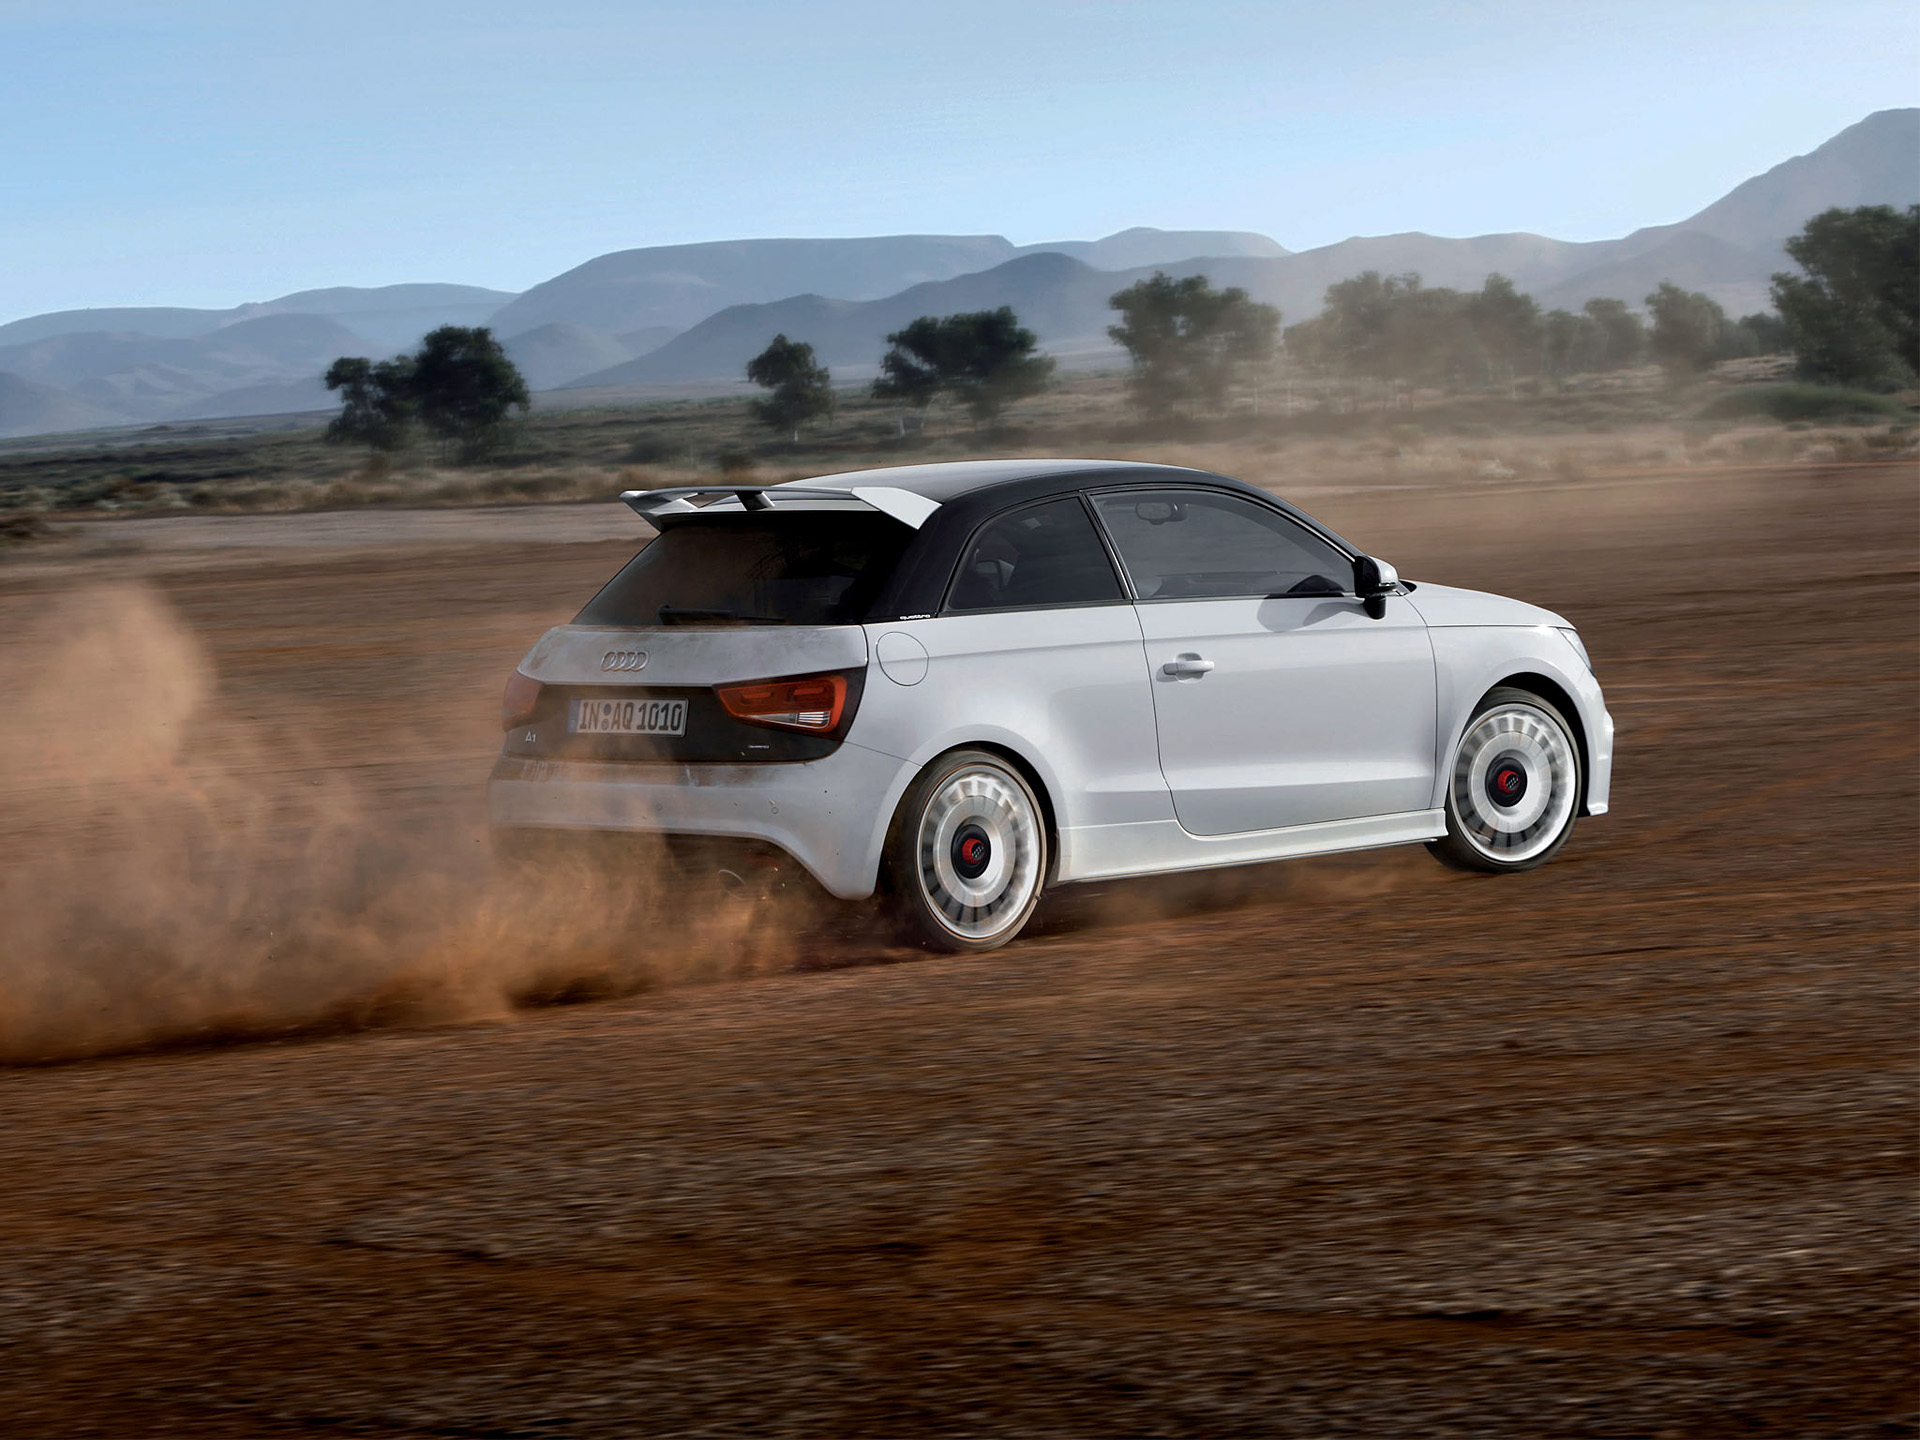 Meilleurs fonds d'écran Audi A1 Quattro pour l'écran du téléphone